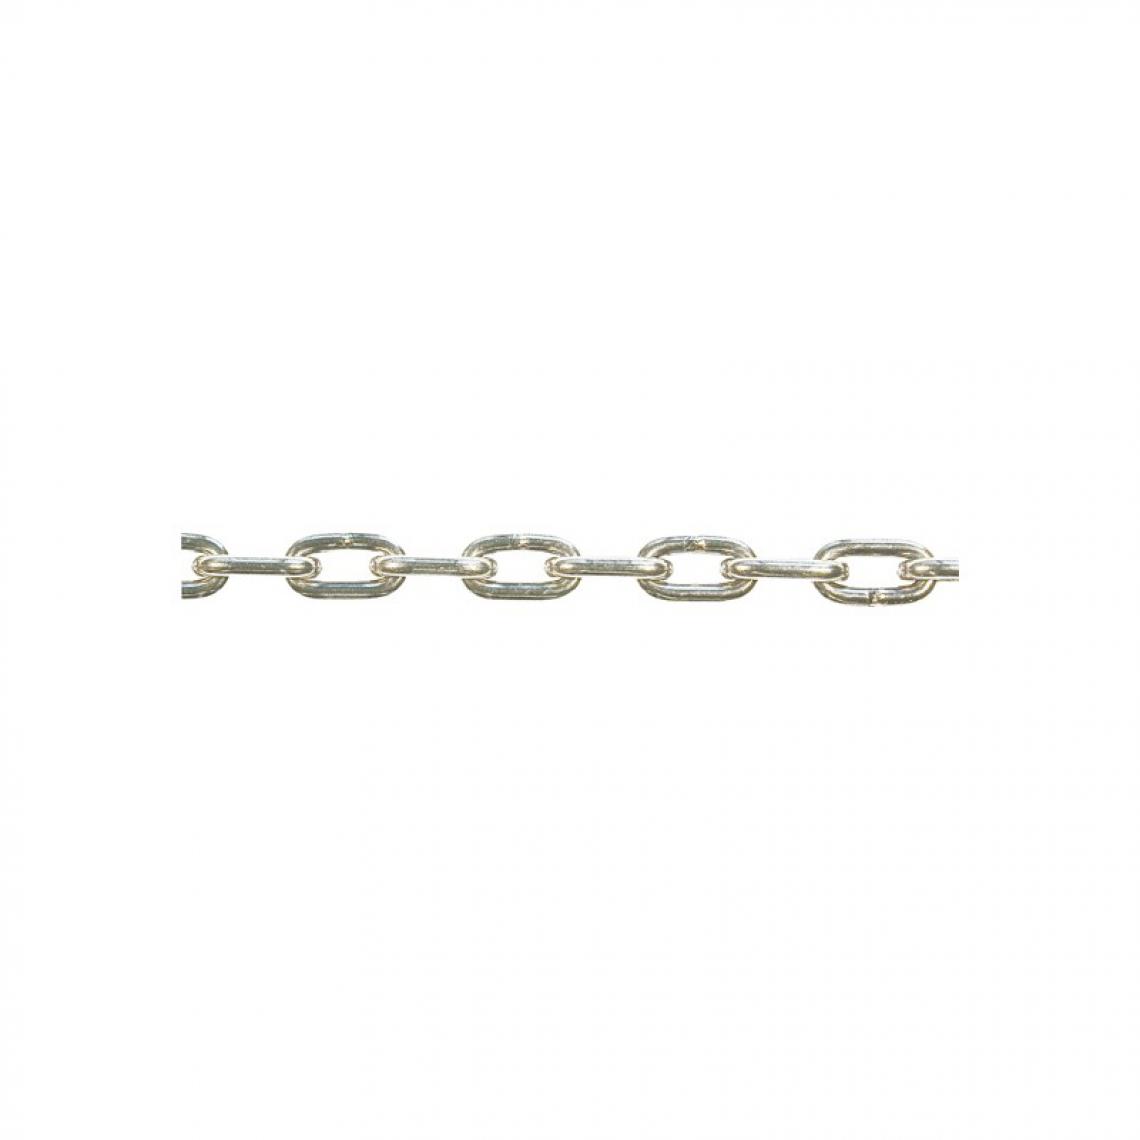 marque generique - Chaine DIN766-A 6x18 inoxydable 30 m (Par 30) - Corde et sangle